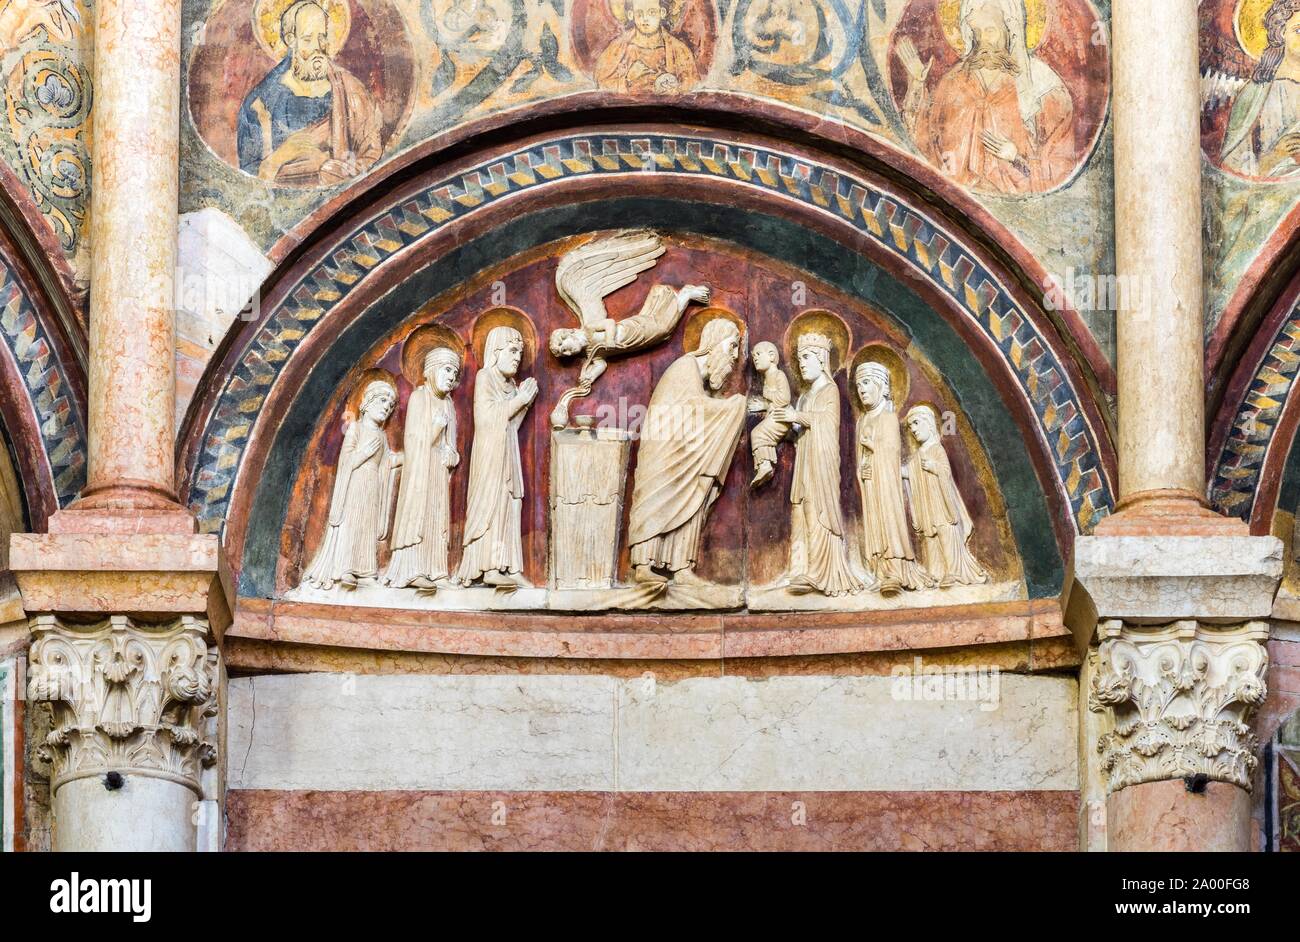 Soulagement en pierre de style roman au-dessus du portail, l'inscription de Jésus au temple, baptistère, Parme, Emilie-Romagne, Italie Banque D'Images